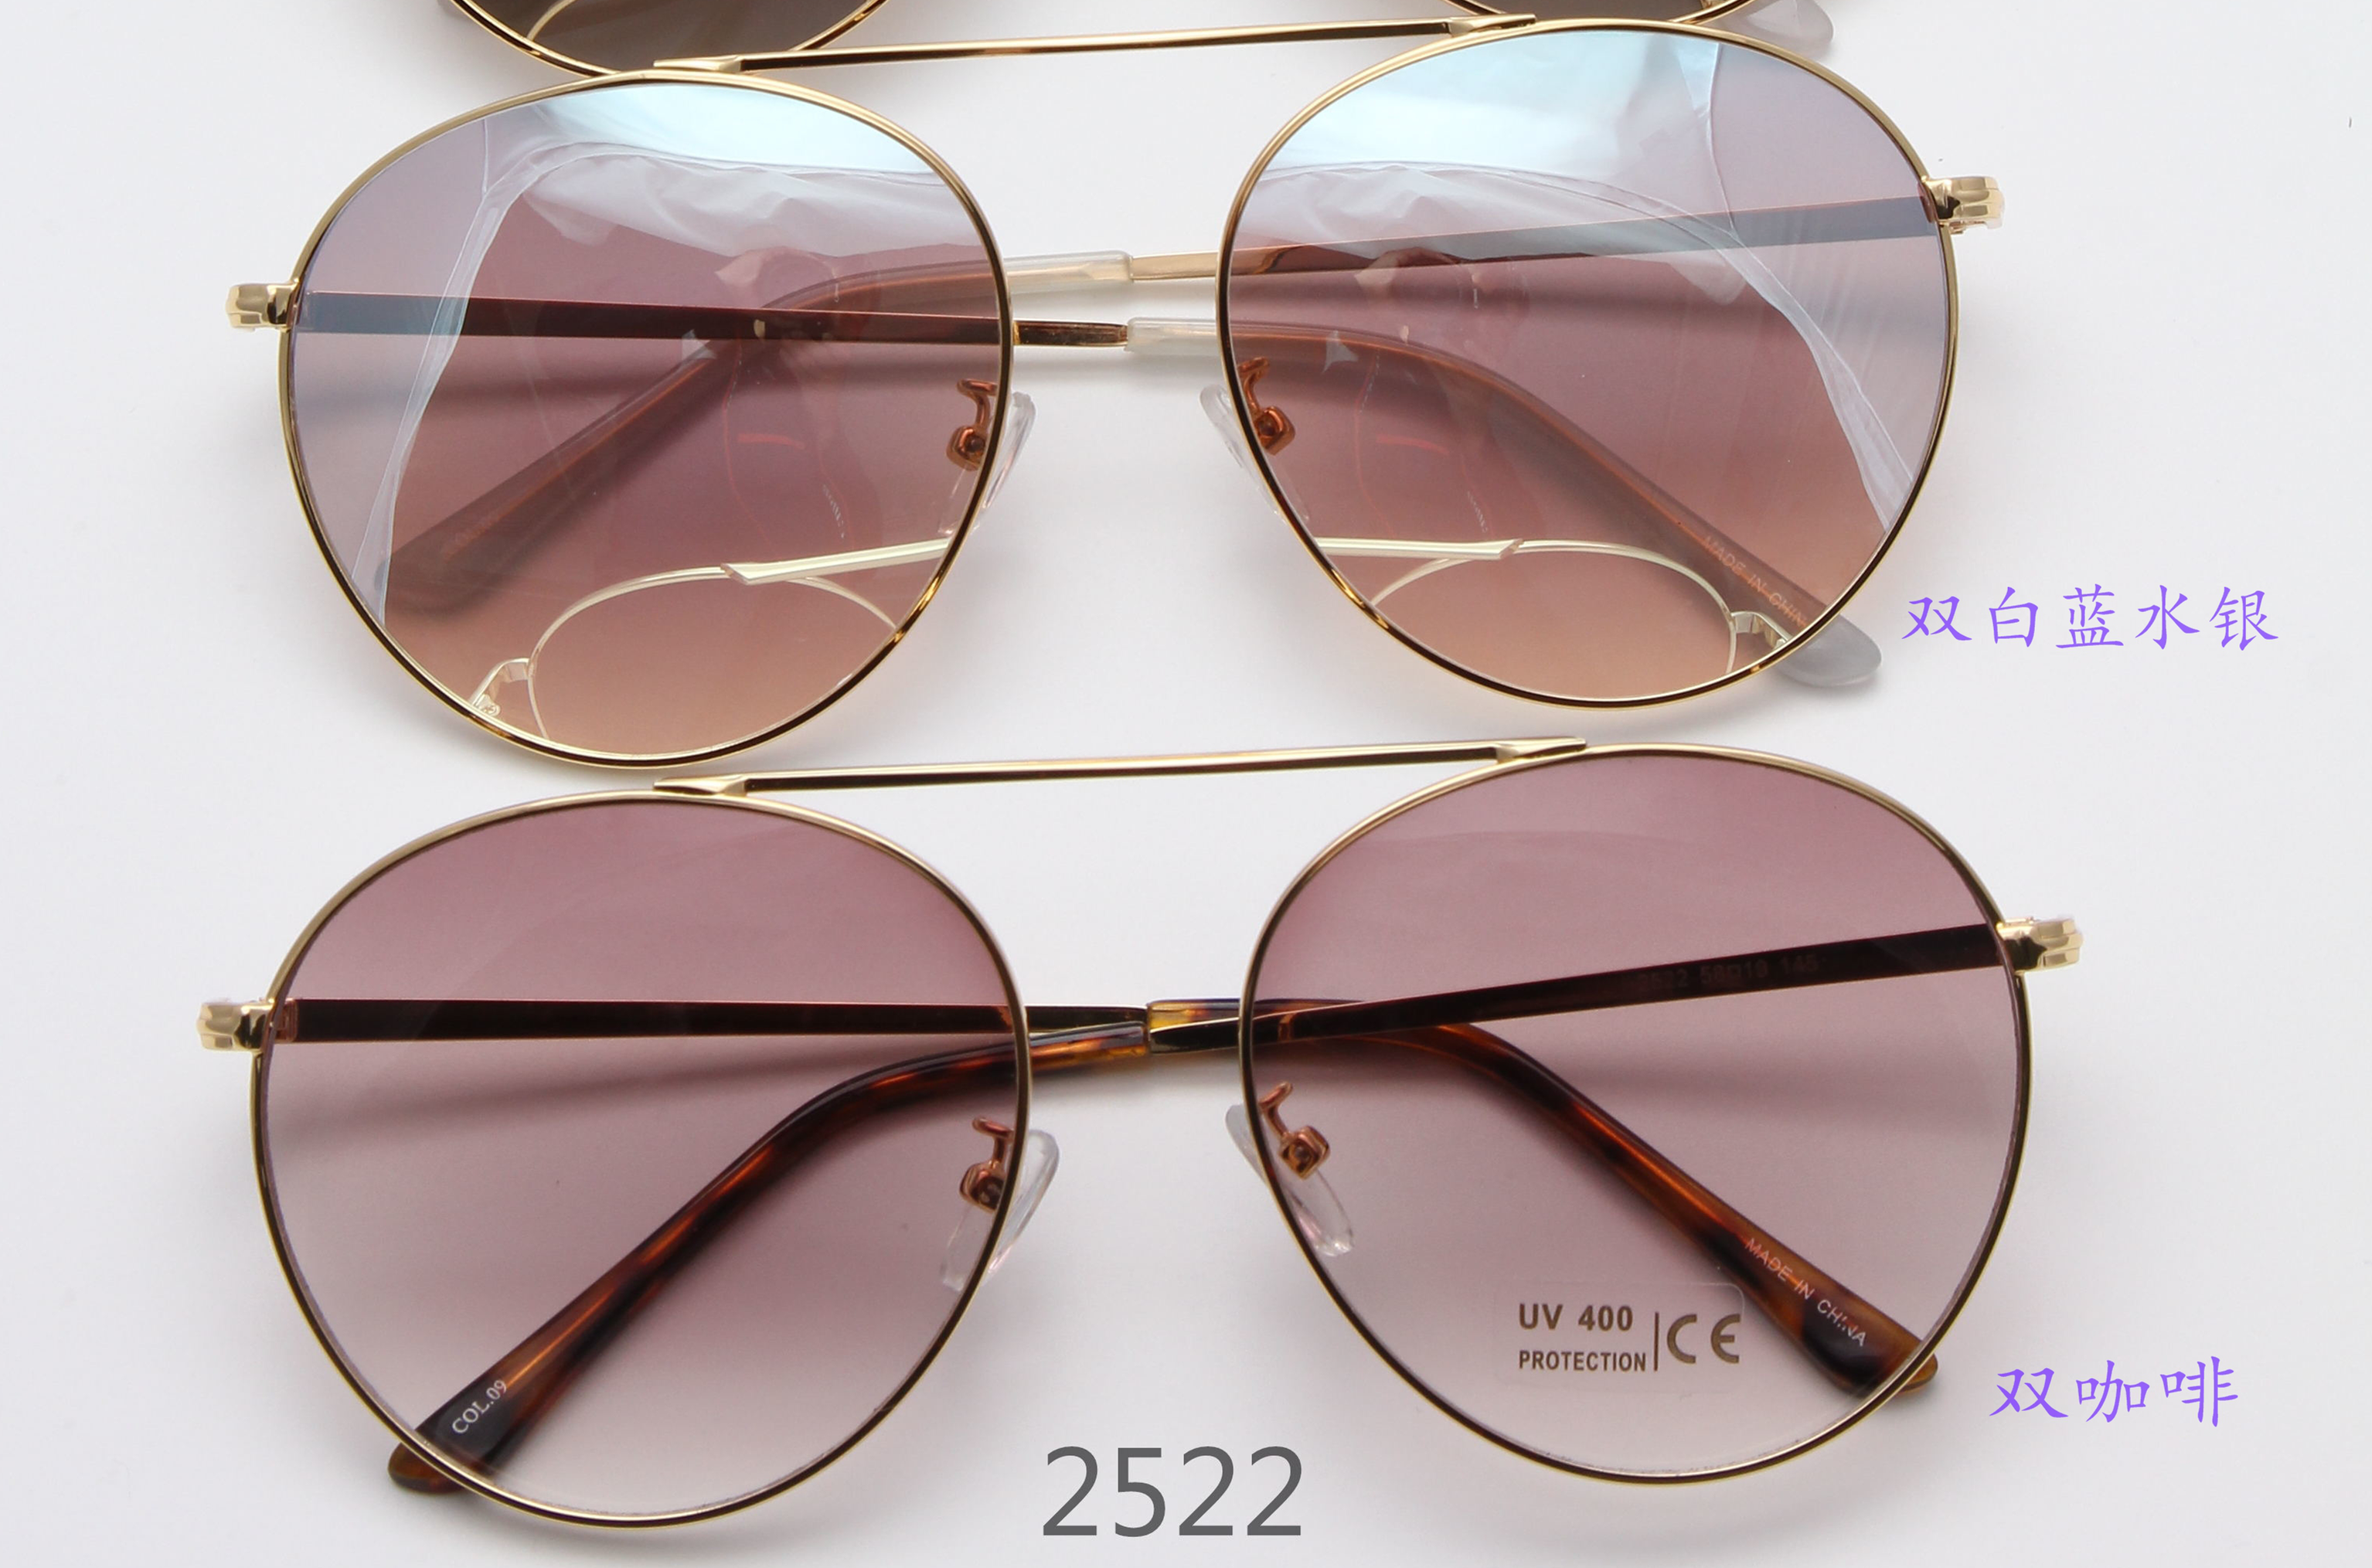 新款高档时尚太阳镜UV400镜片防紫外线眼镜防晒镜1